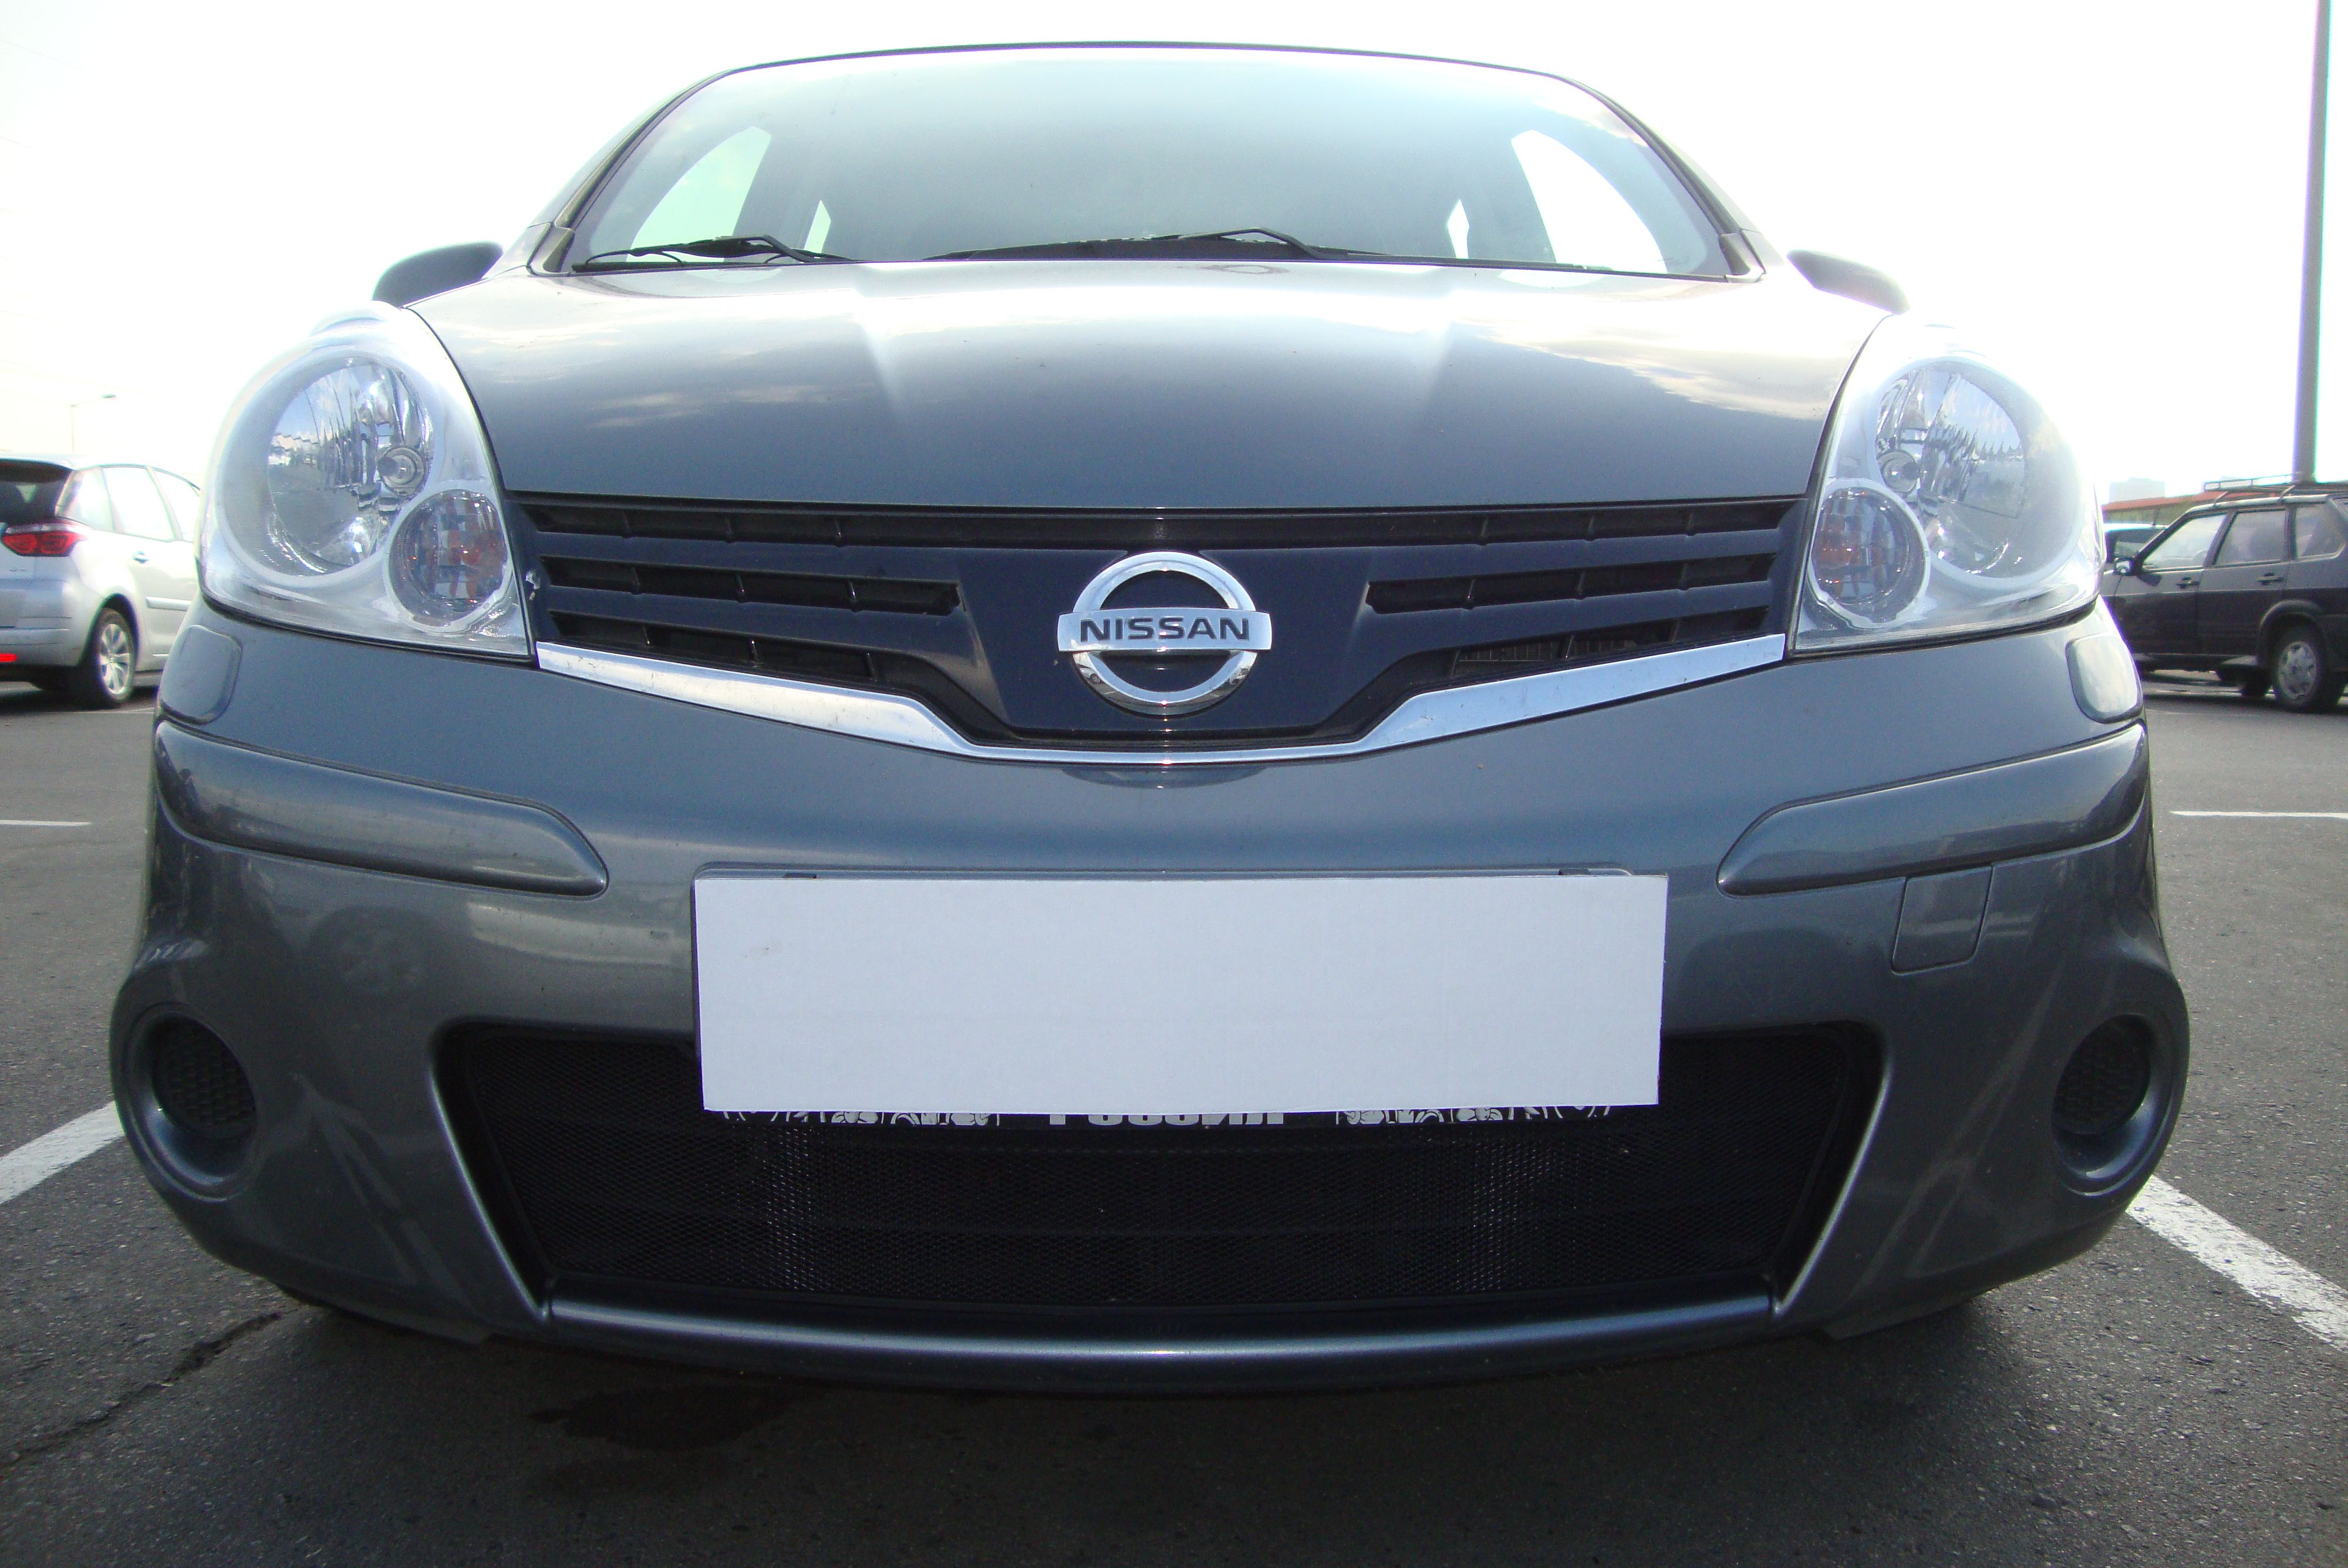 Защитная сетка радиатора ProtectGrille для Nissan Note (2009-2015 Черная)